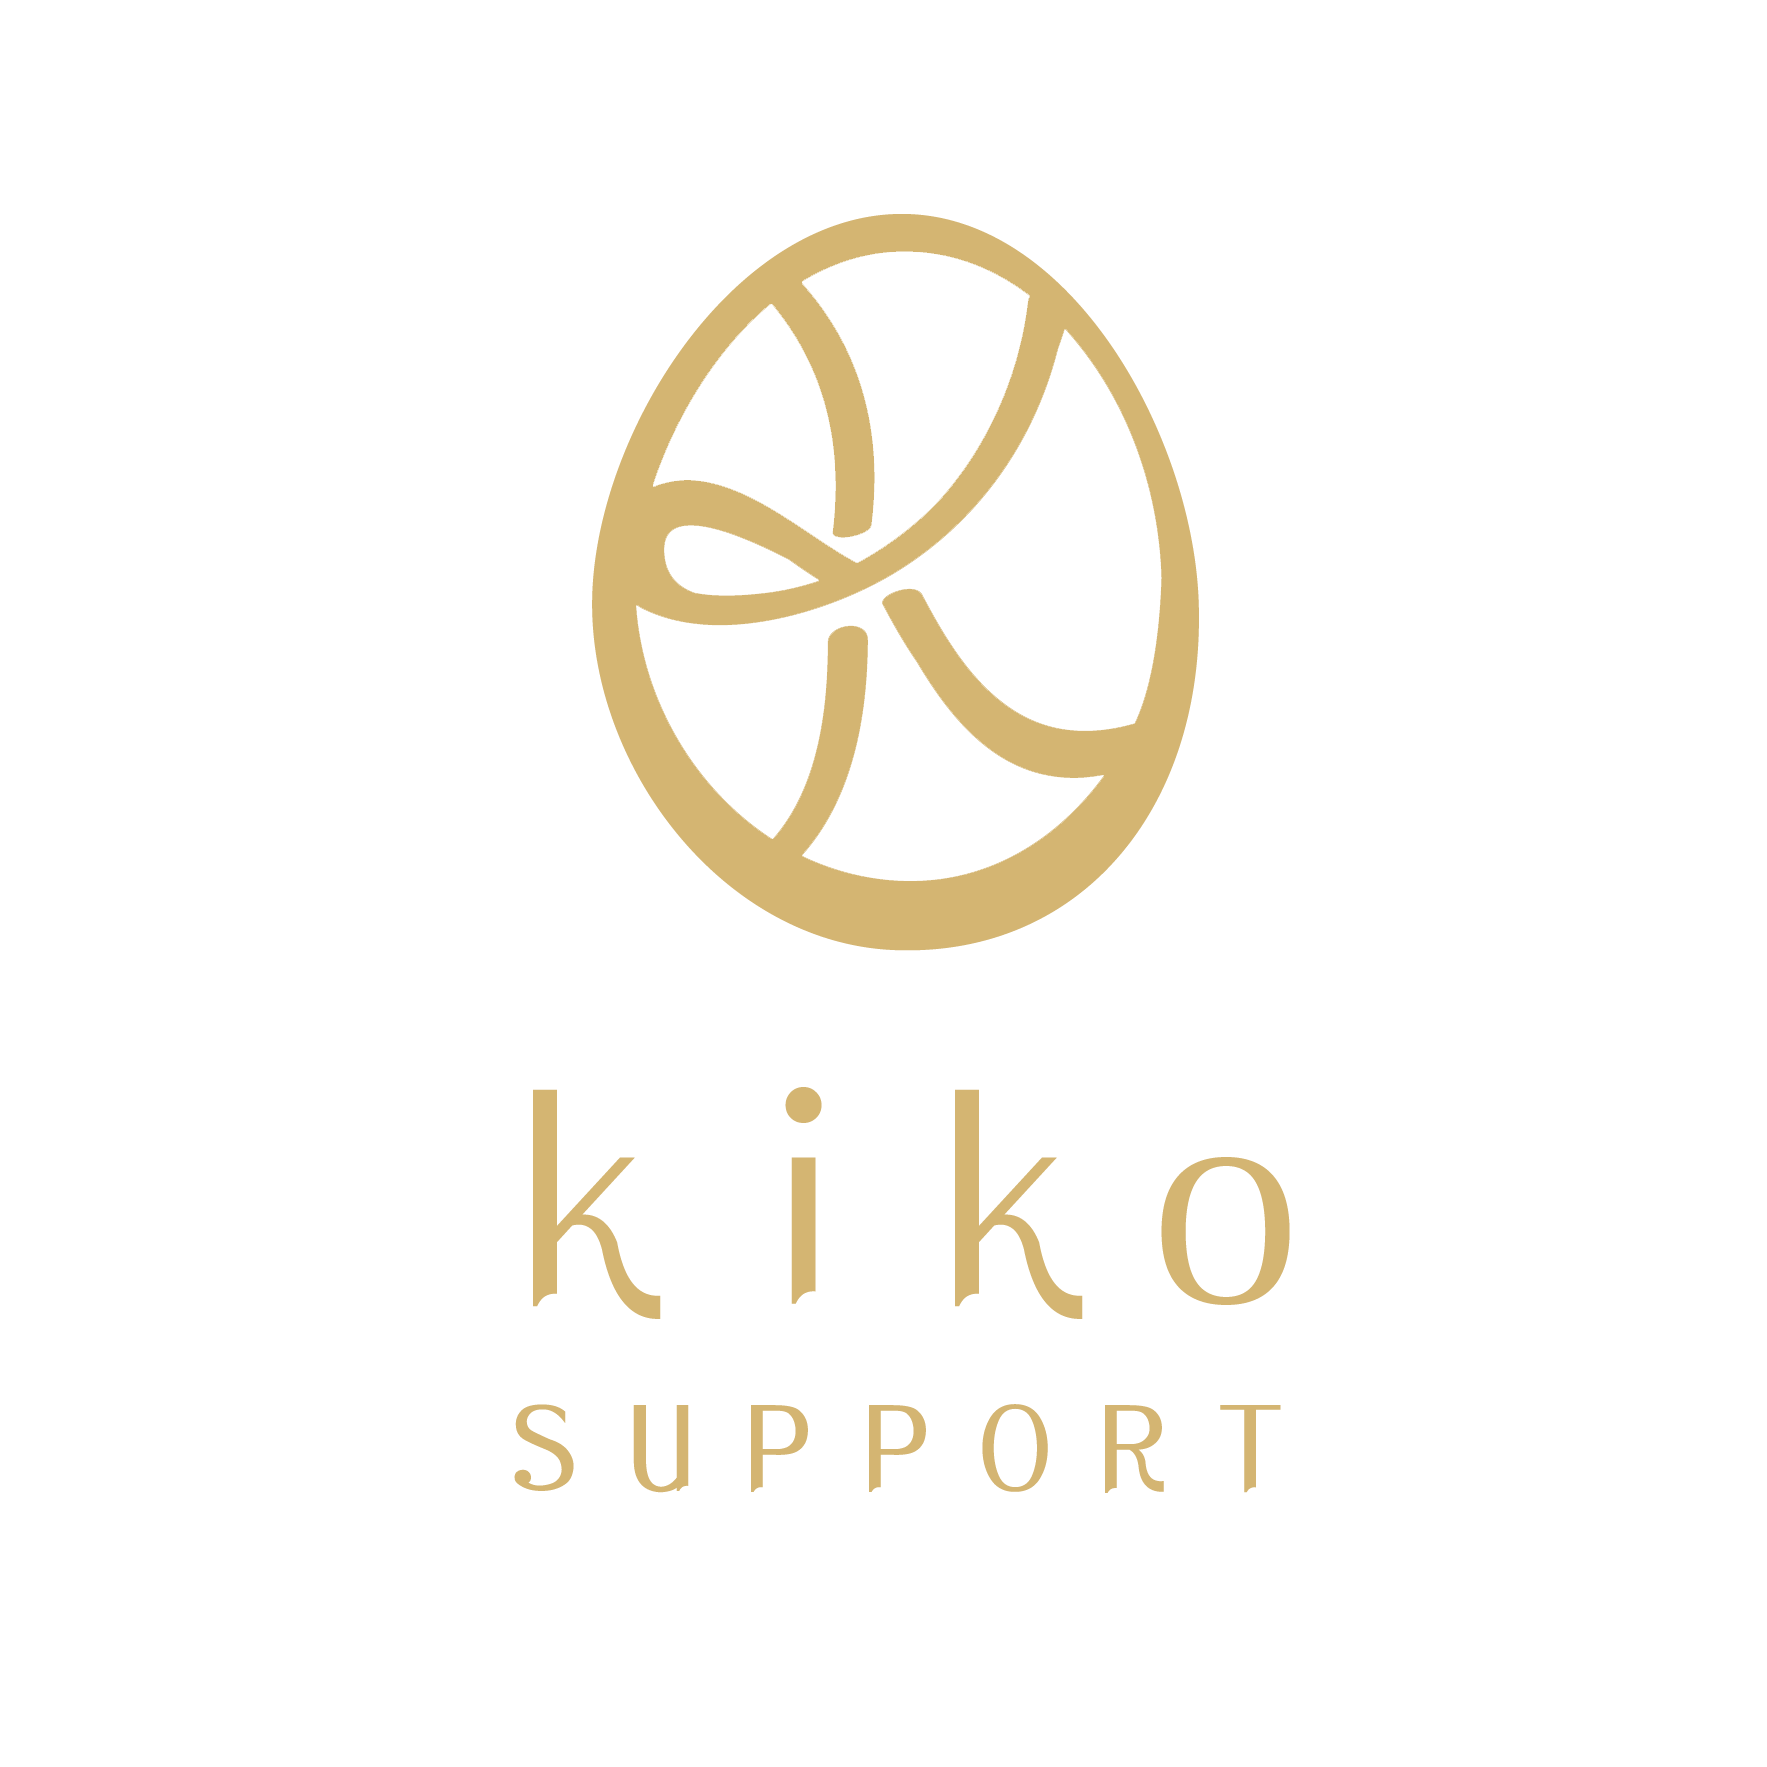 kiko support